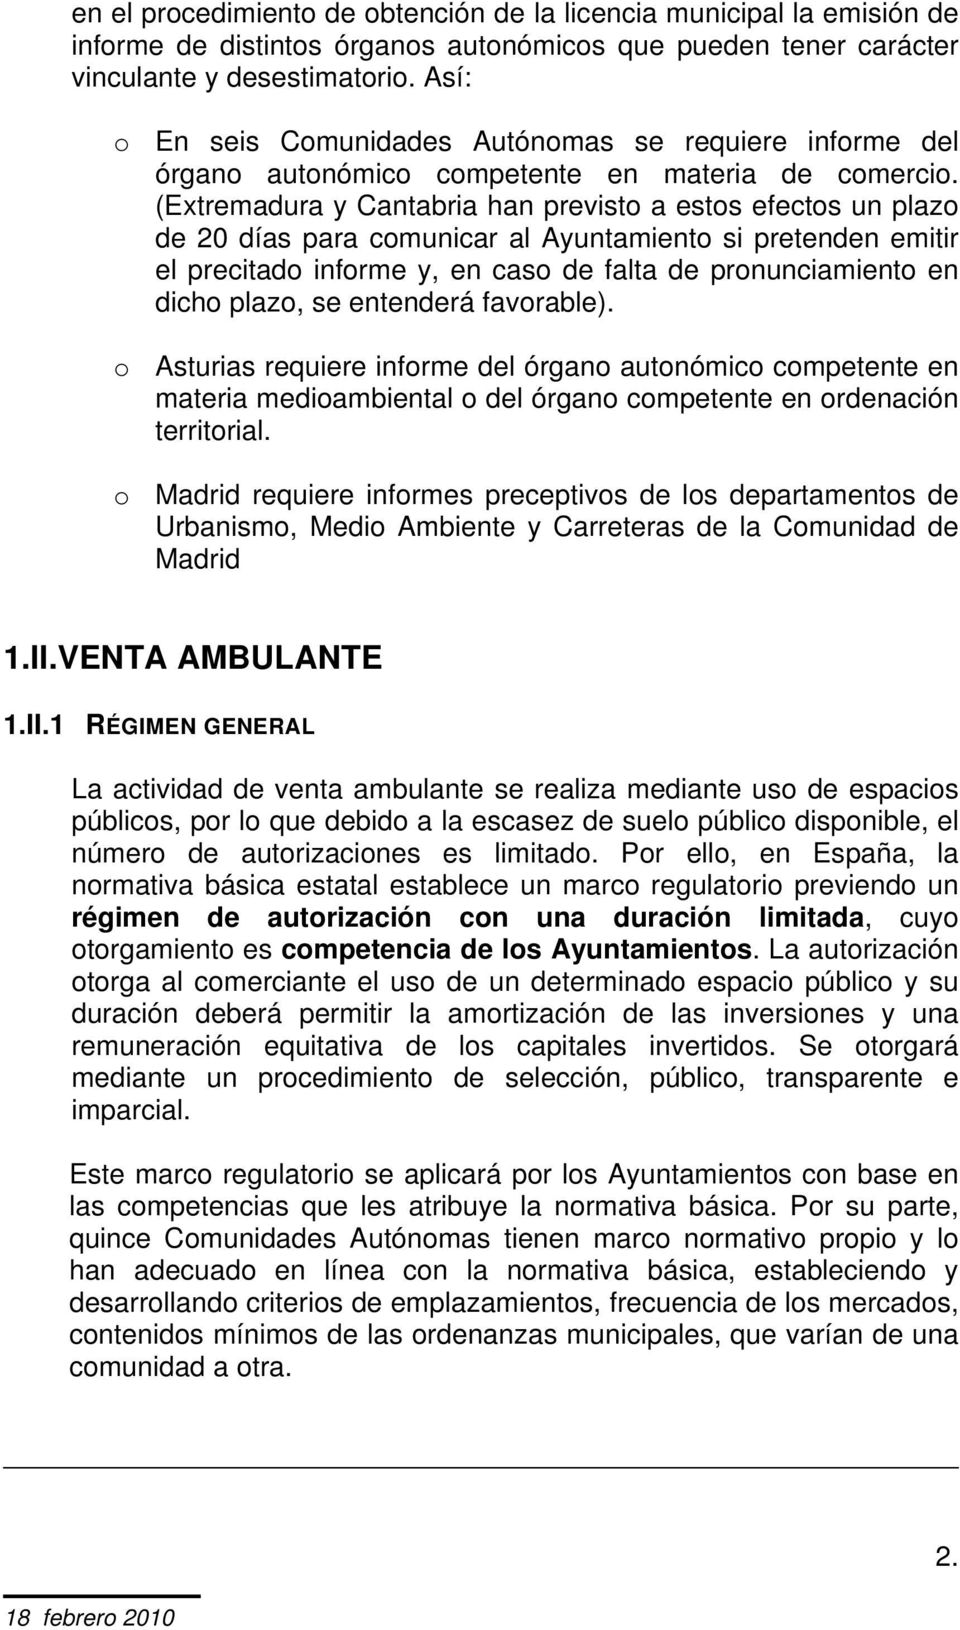 (Extremadura y Cantabria han previsto a estos efectos un plazo de 20 días para comunicar al Ayuntamiento si pretenden emitir el precitado informe y, en caso de falta de pronunciamiento en dicho